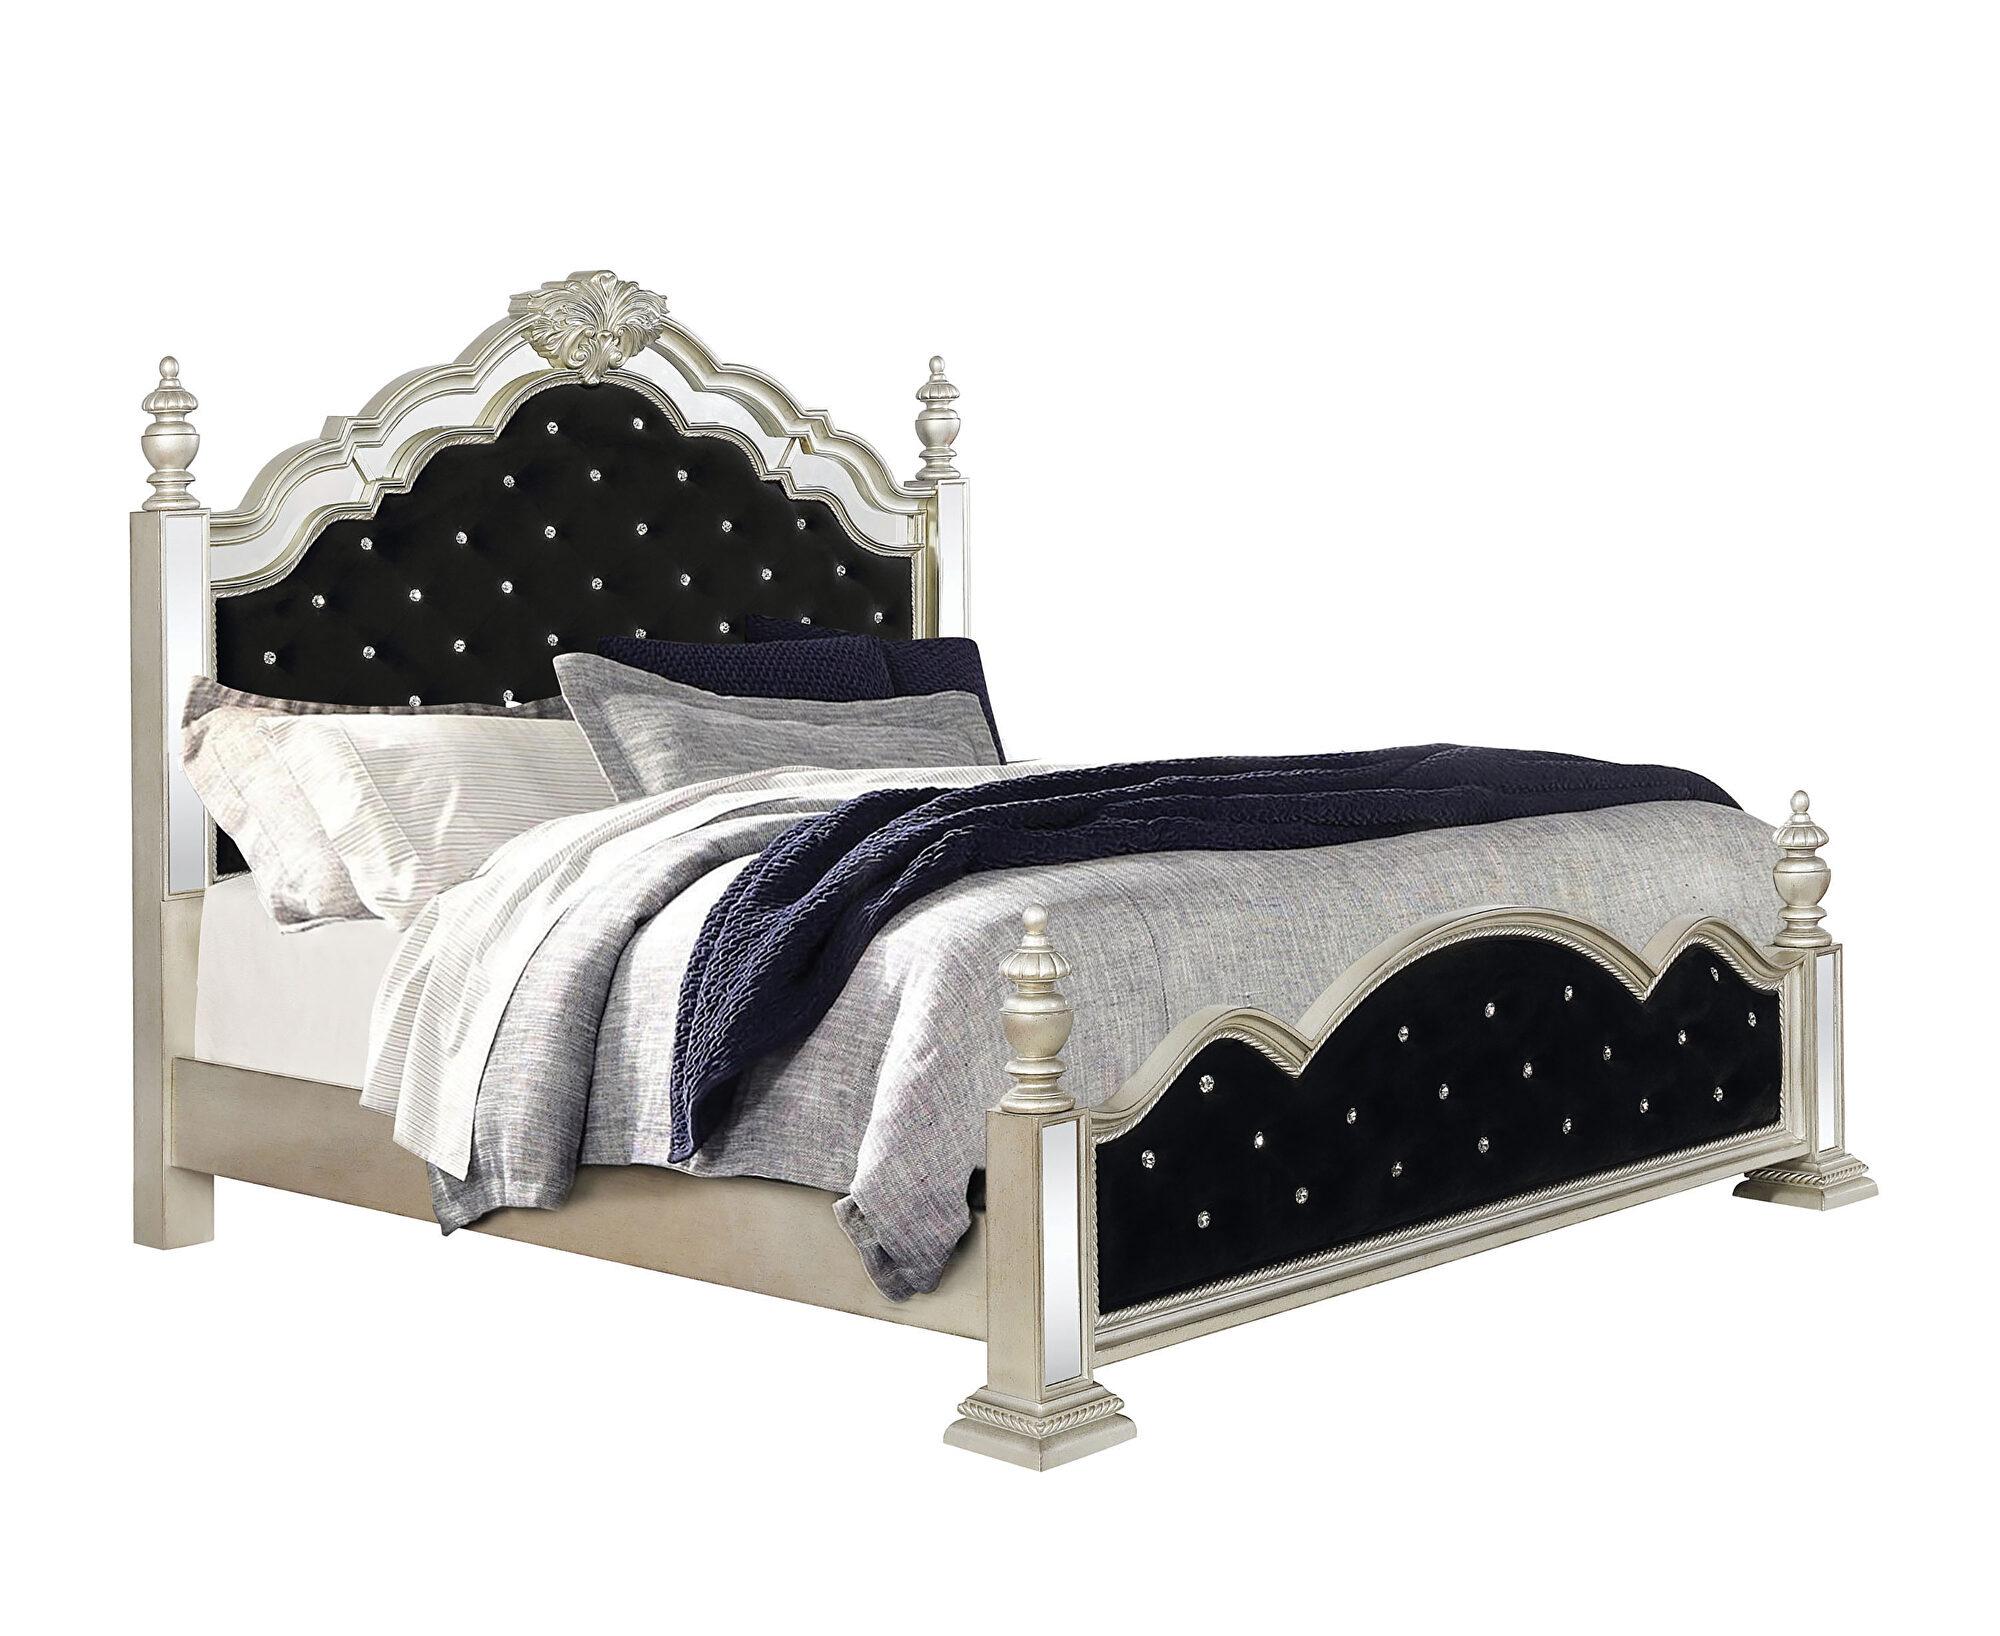 

    
Glam Metallic Platinum Wood Queen Bedroom Set 3pcs Coaster 222731Q Heidi
